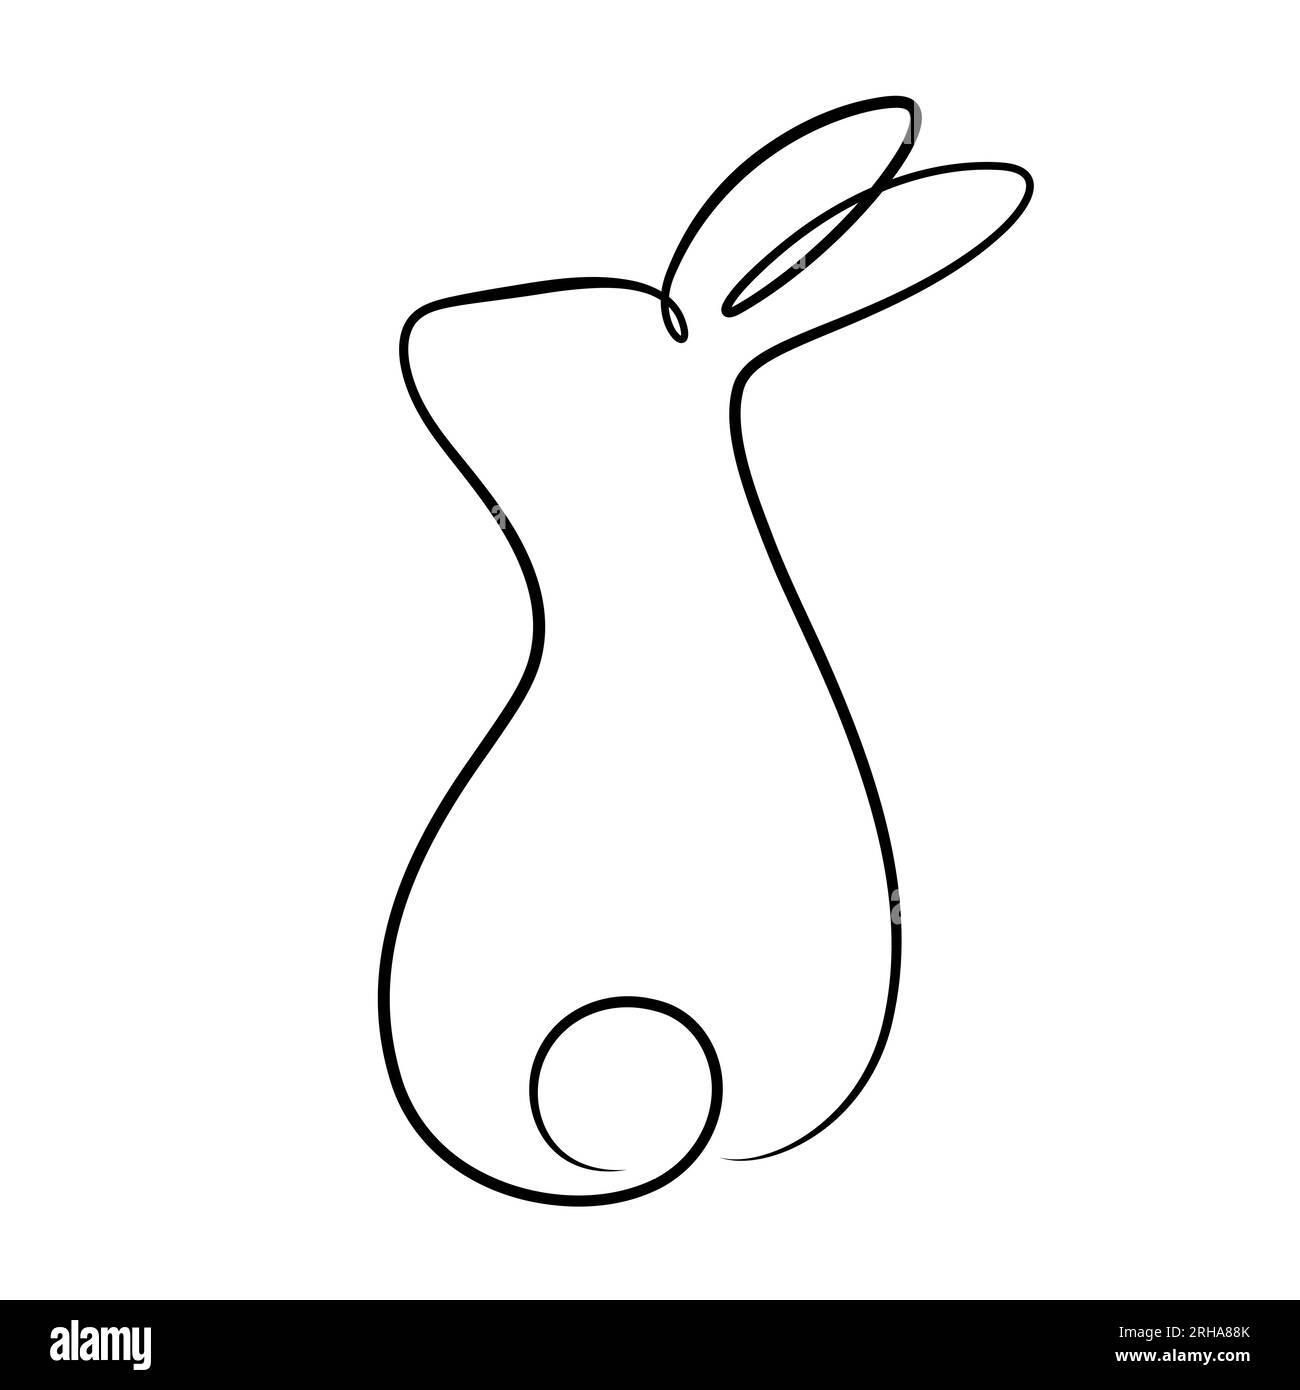 dessin de ligne continue du style calligraphique de lapin pour pâques, festival de mi-automne, logo, décoratif, etc Illustration de Vecteur